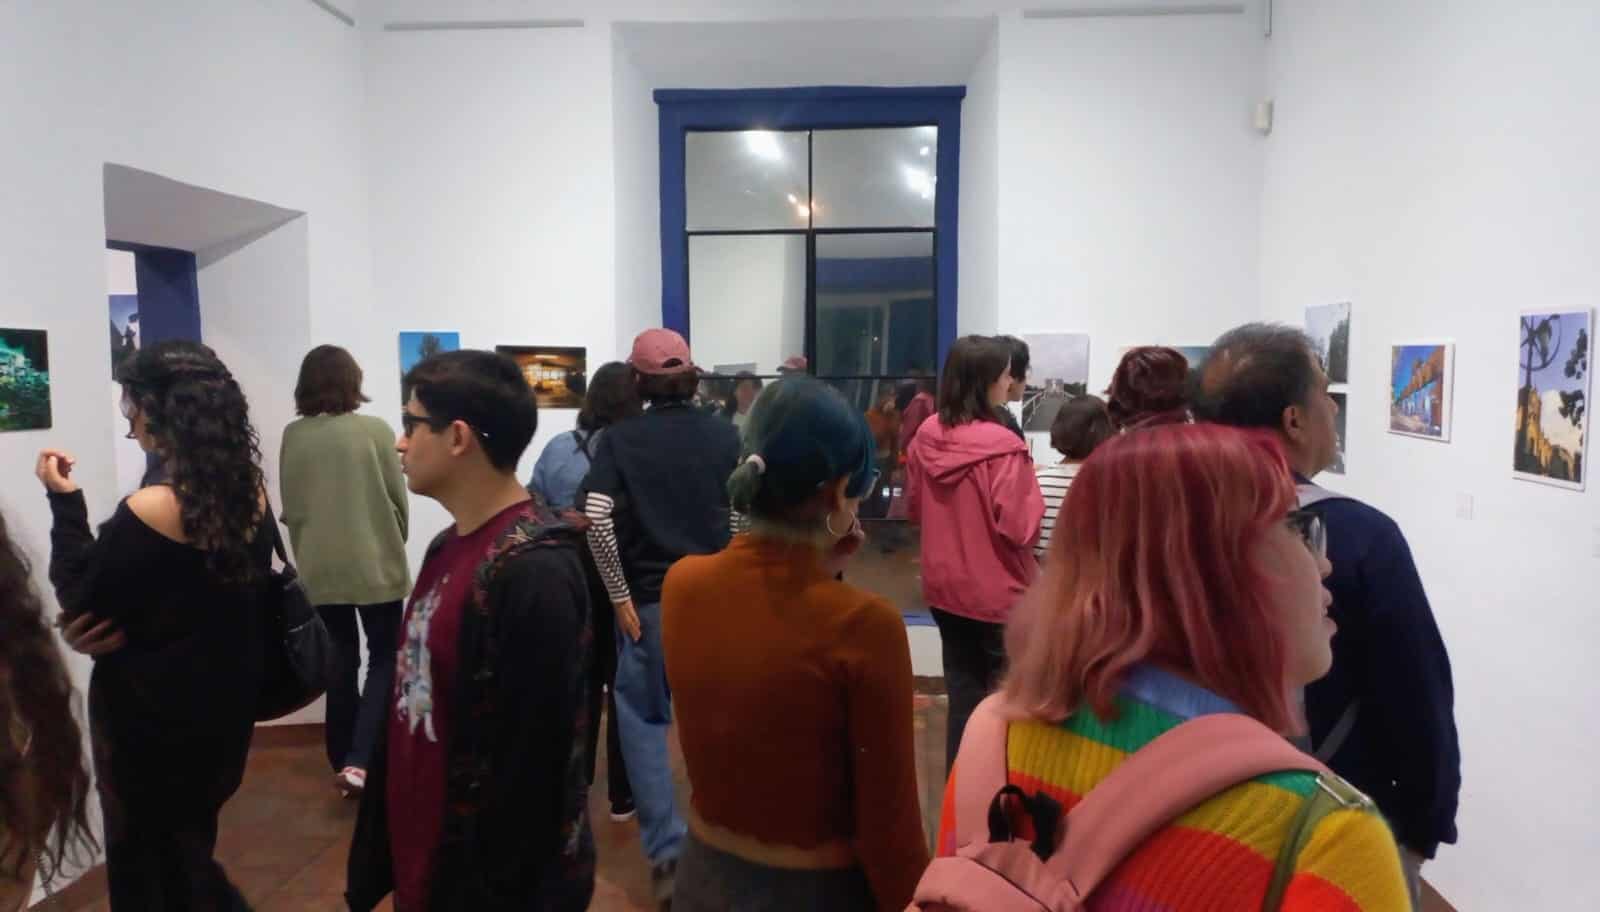 Historia a través de la fotografía: El CEDART Inaugura exposición por el aniversario de Guadalajara